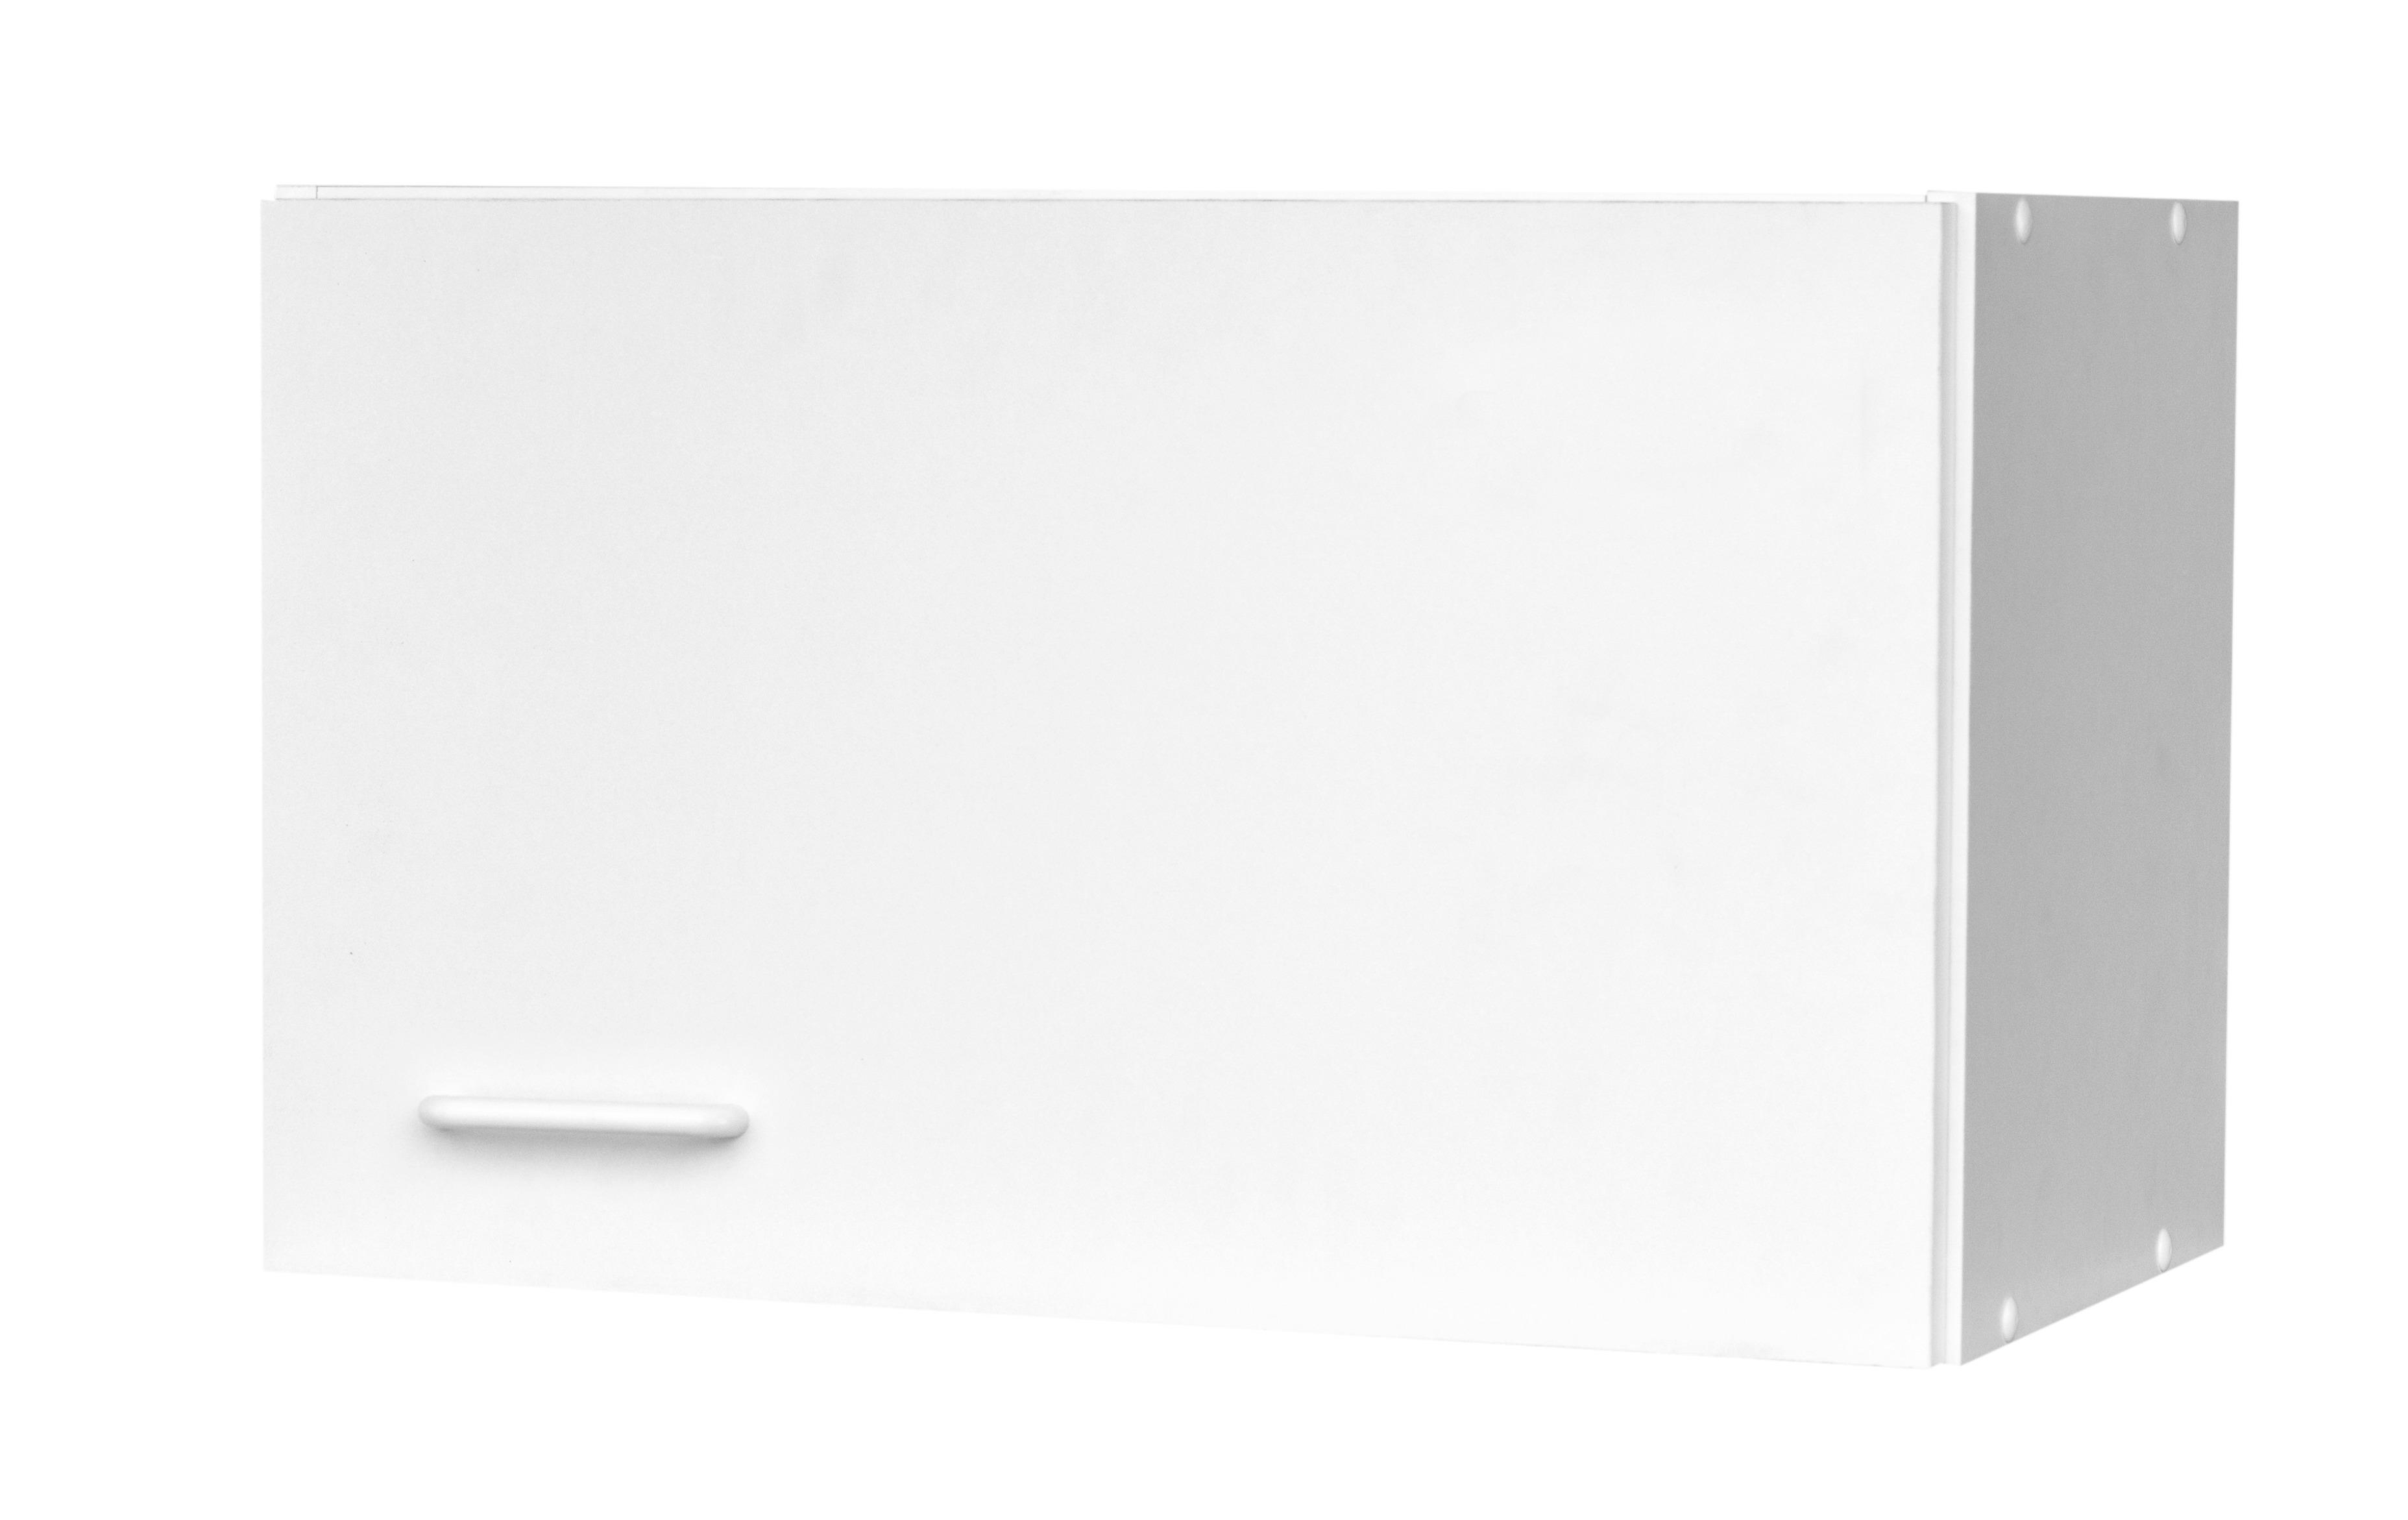 Wrasenhängeschrank Top weiß matt B/H/T: ca. 60x37x35 cm Top - weiß (60,00/37,00/35,00cm)